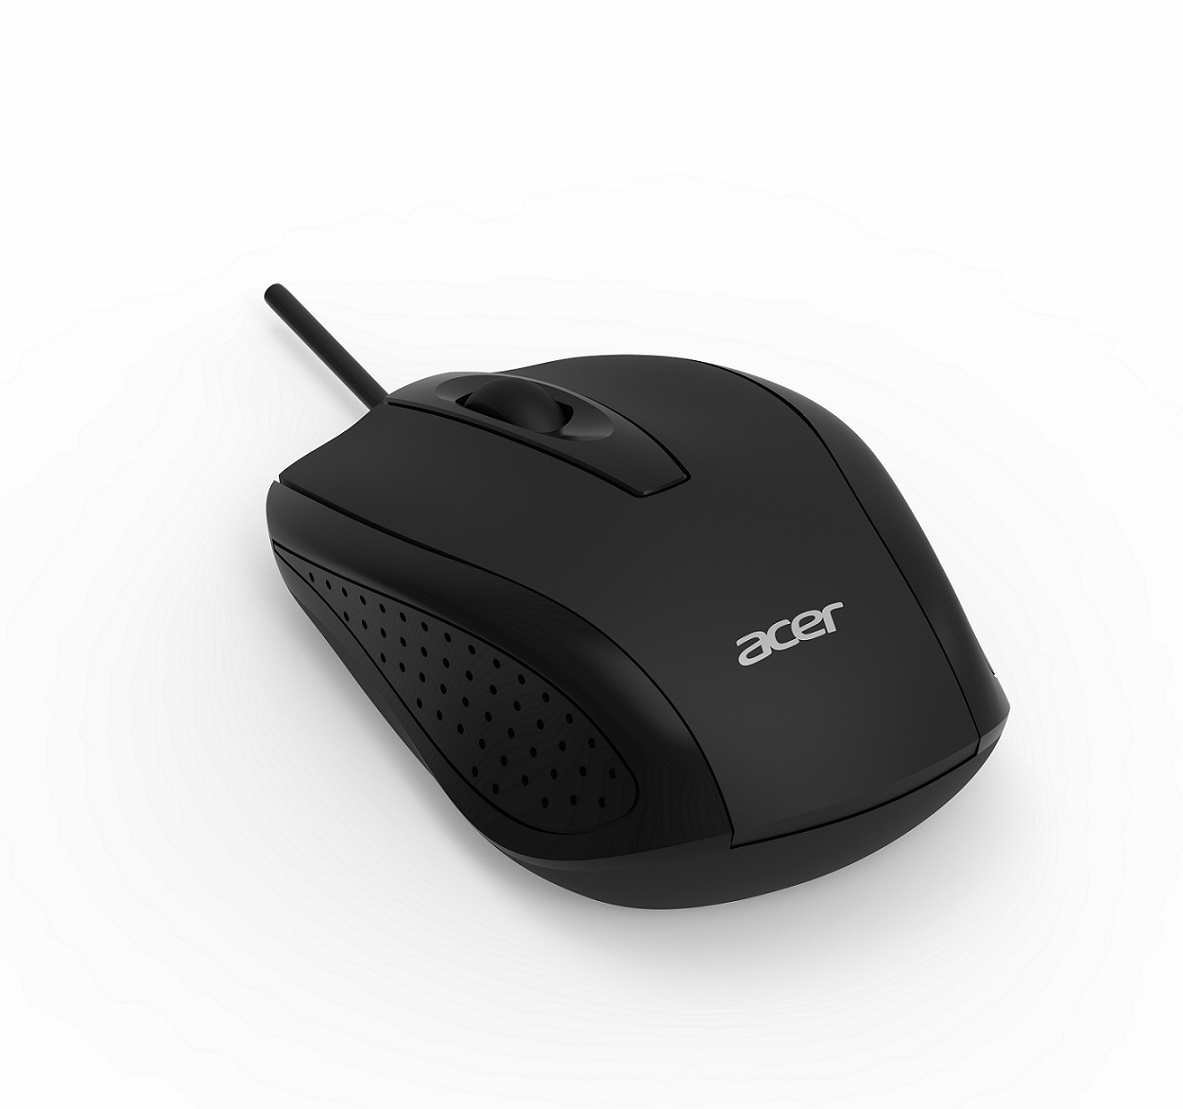 Obrázek Acer wired USB optical mouse black bulk pack